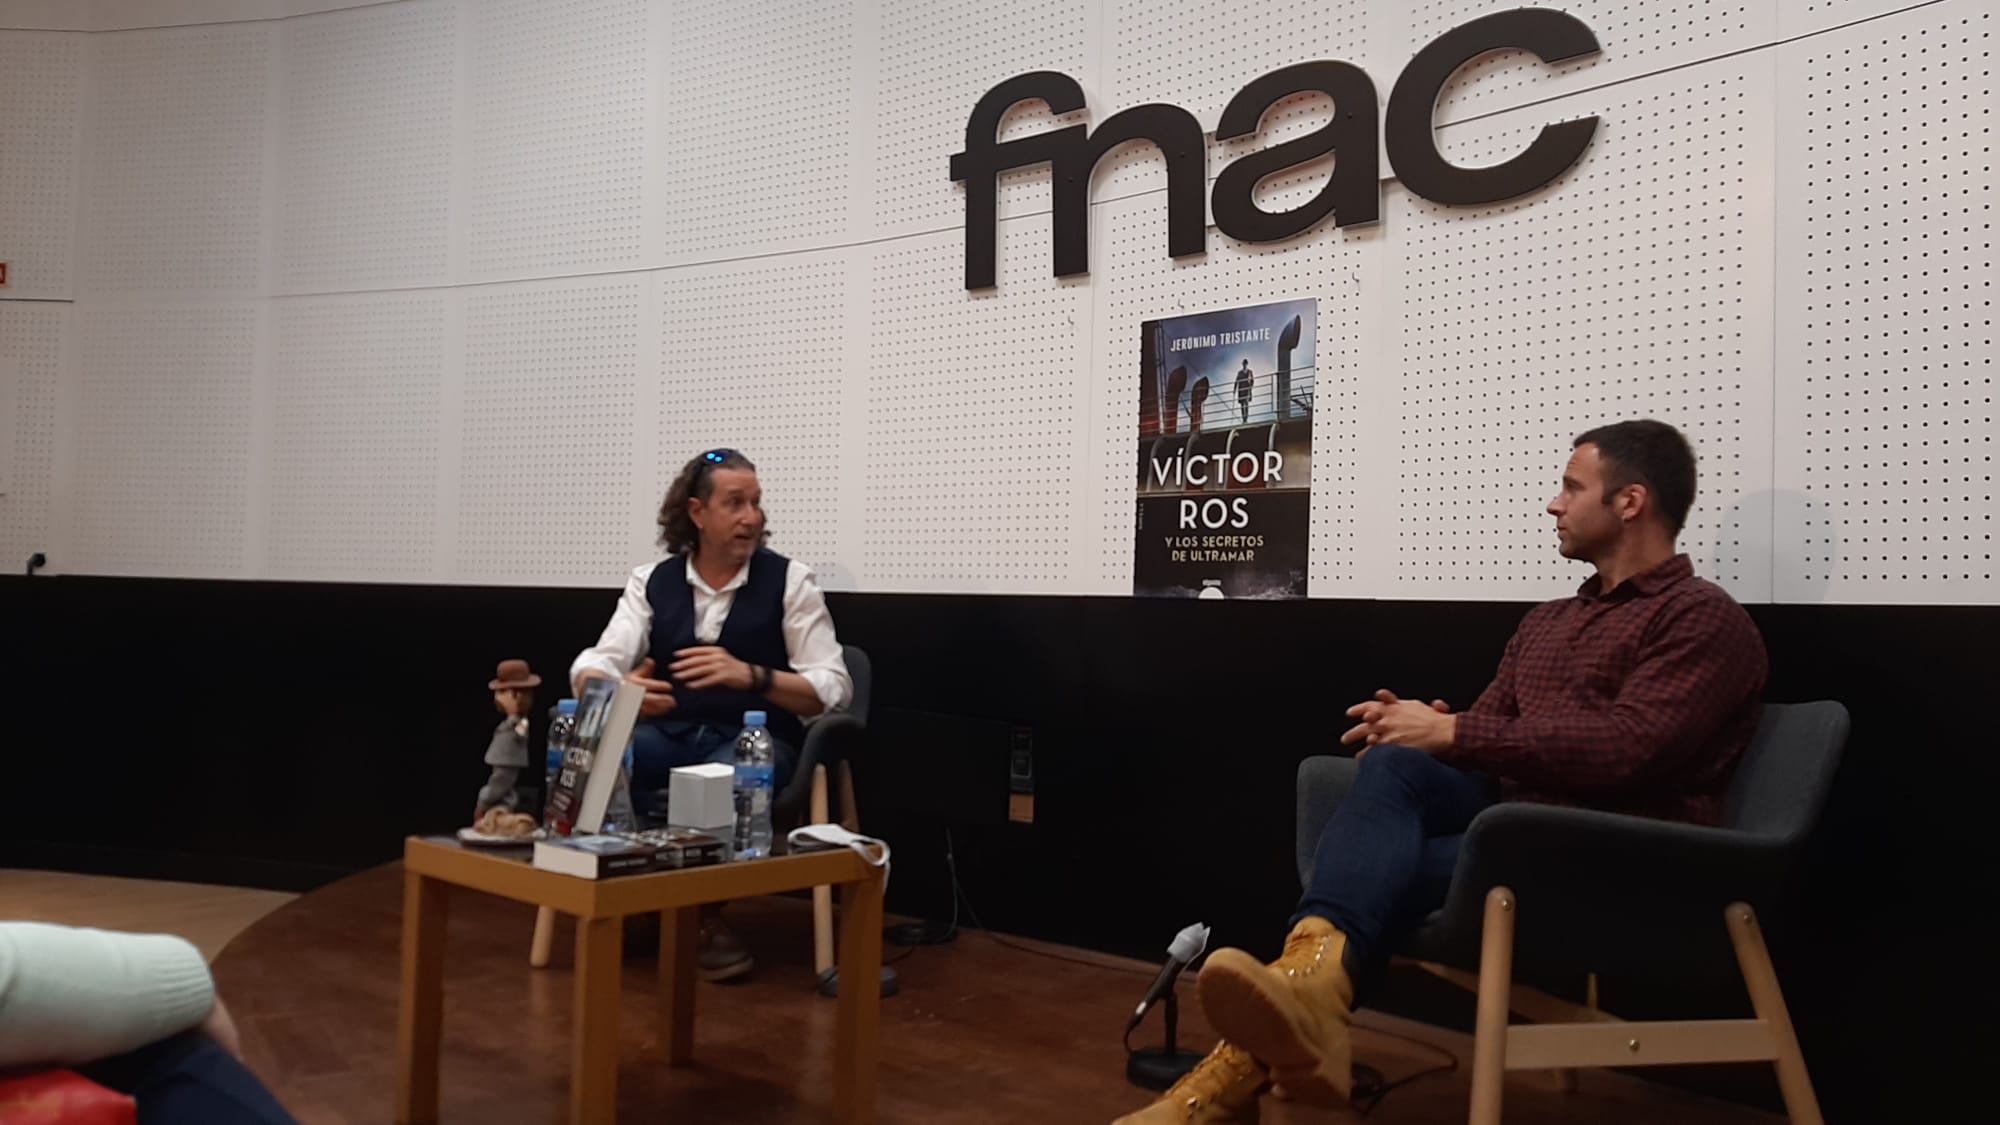 Jerónimo Tristante y Carles Francino charlan sobre Víctor Ros